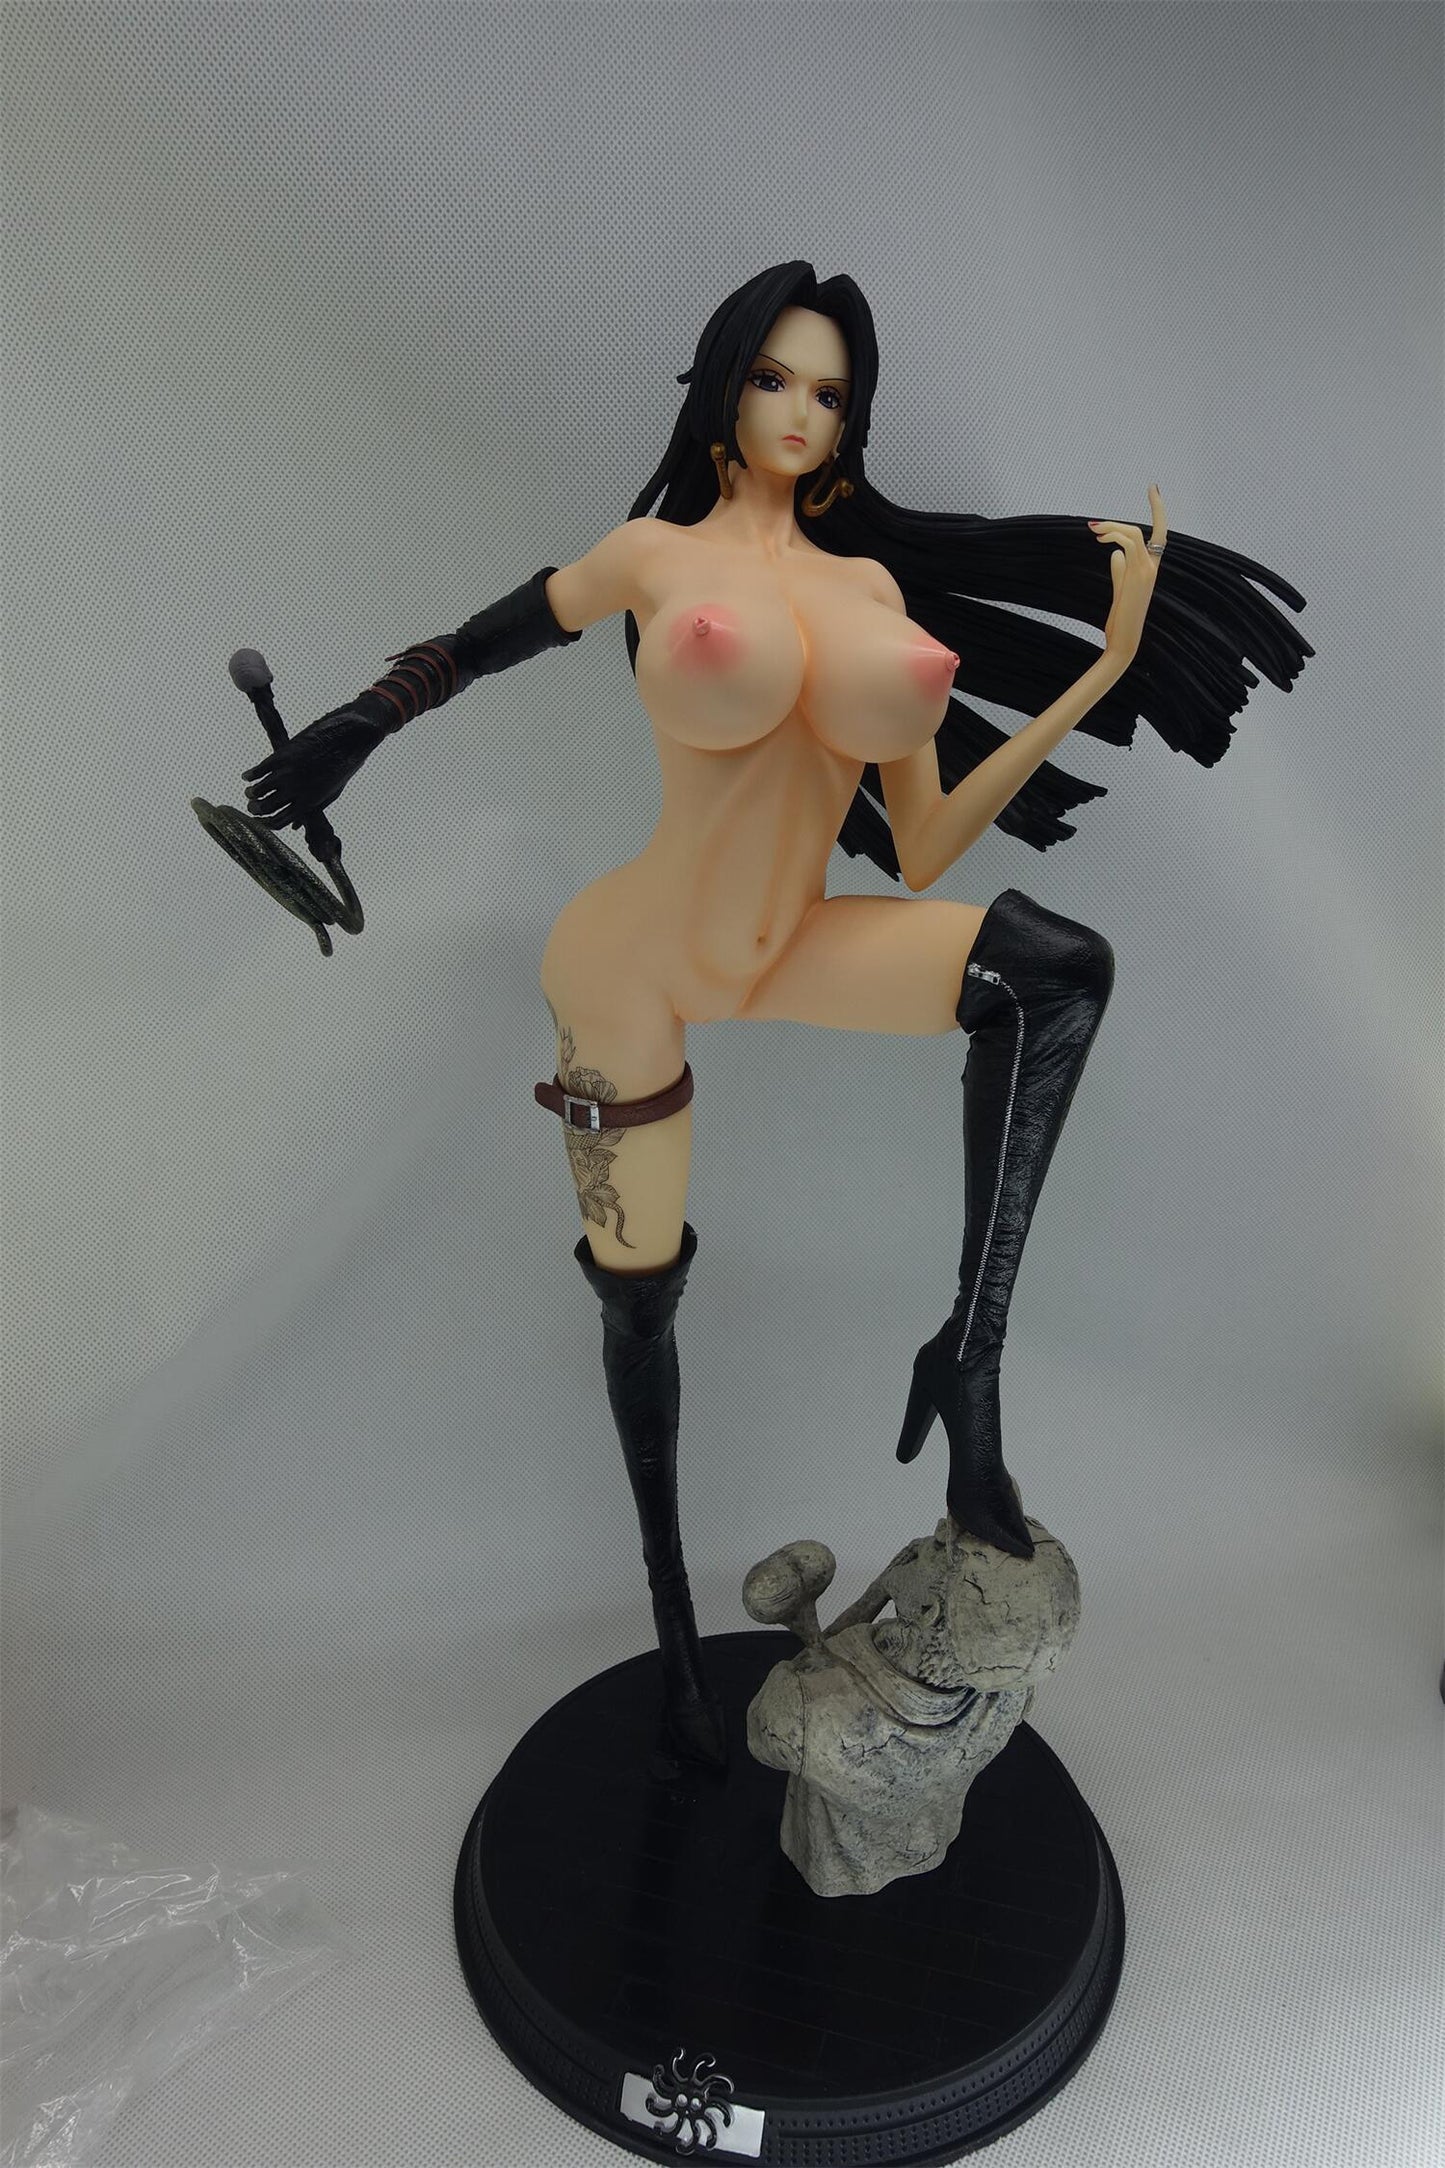 One Piece - Boa Hancock huge breast 1/4 nude anime figure